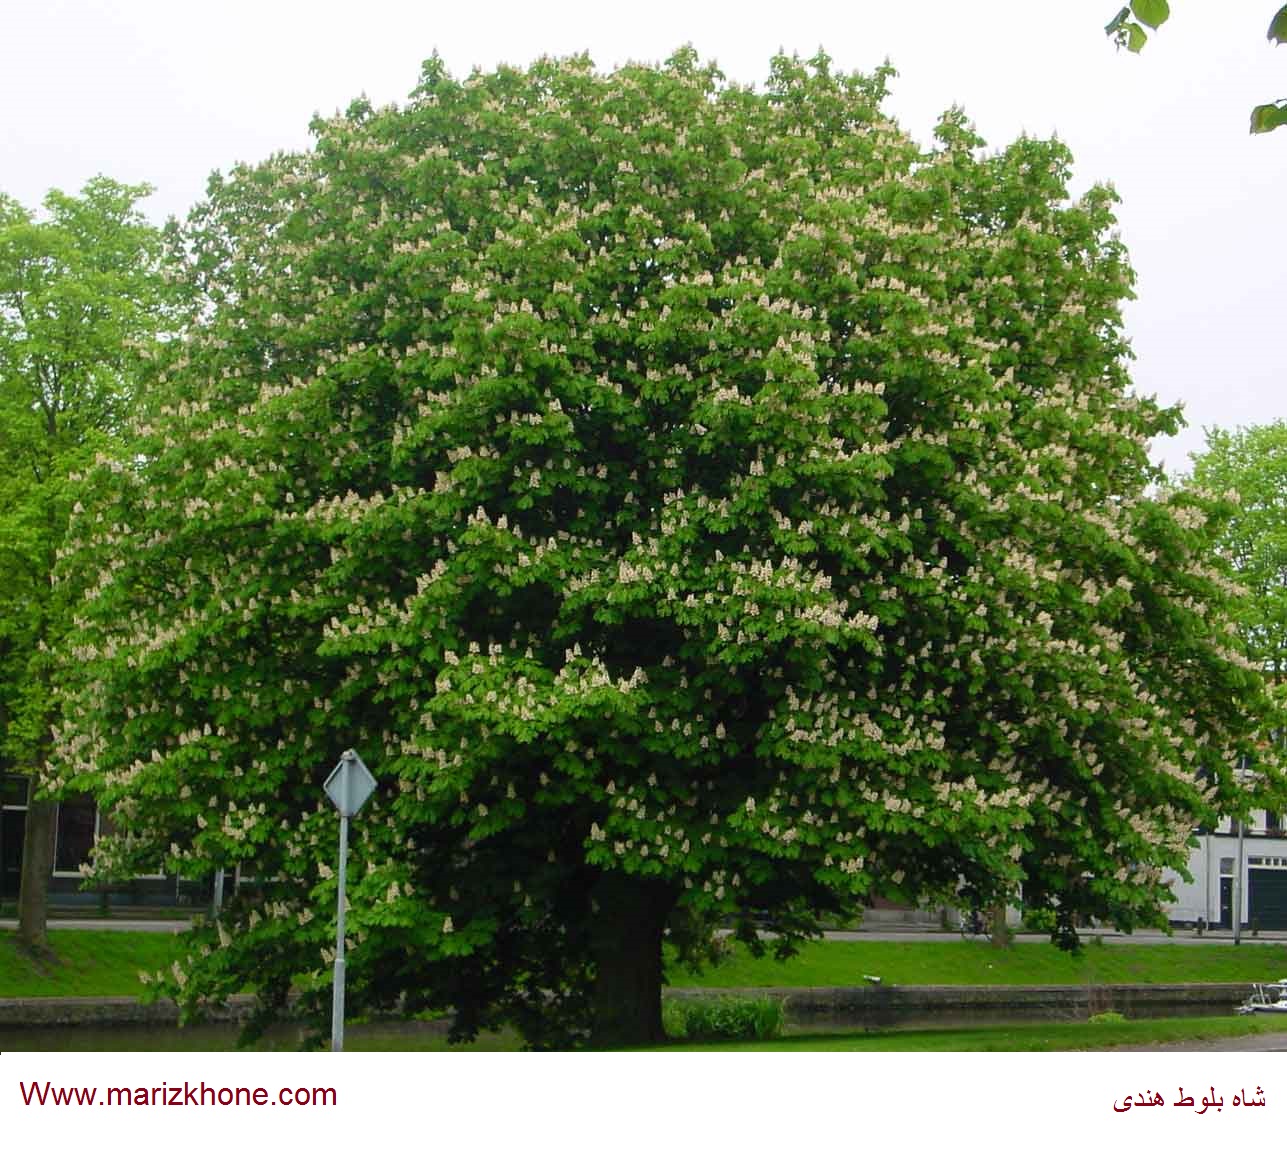 درختانی بلند،دارای چتر و تاجی از شاخ و برگ انبوه هستند وبسایت اطلاعات پزشکی مریض خونه Www.marizkhone.com